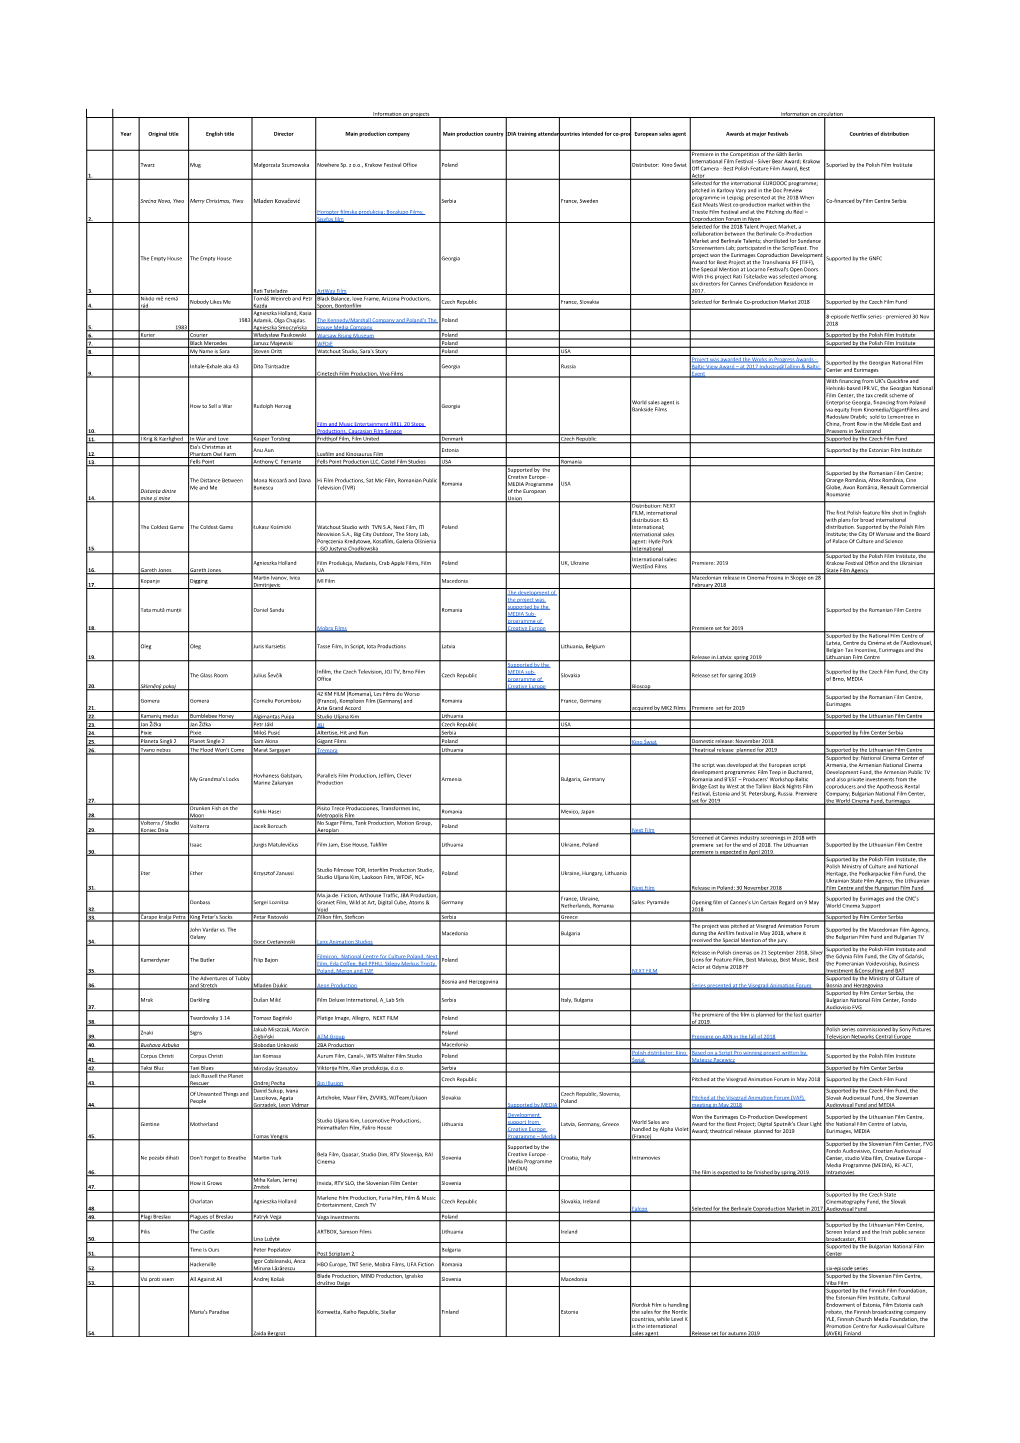 FNE List of AV Works Presented in 2018